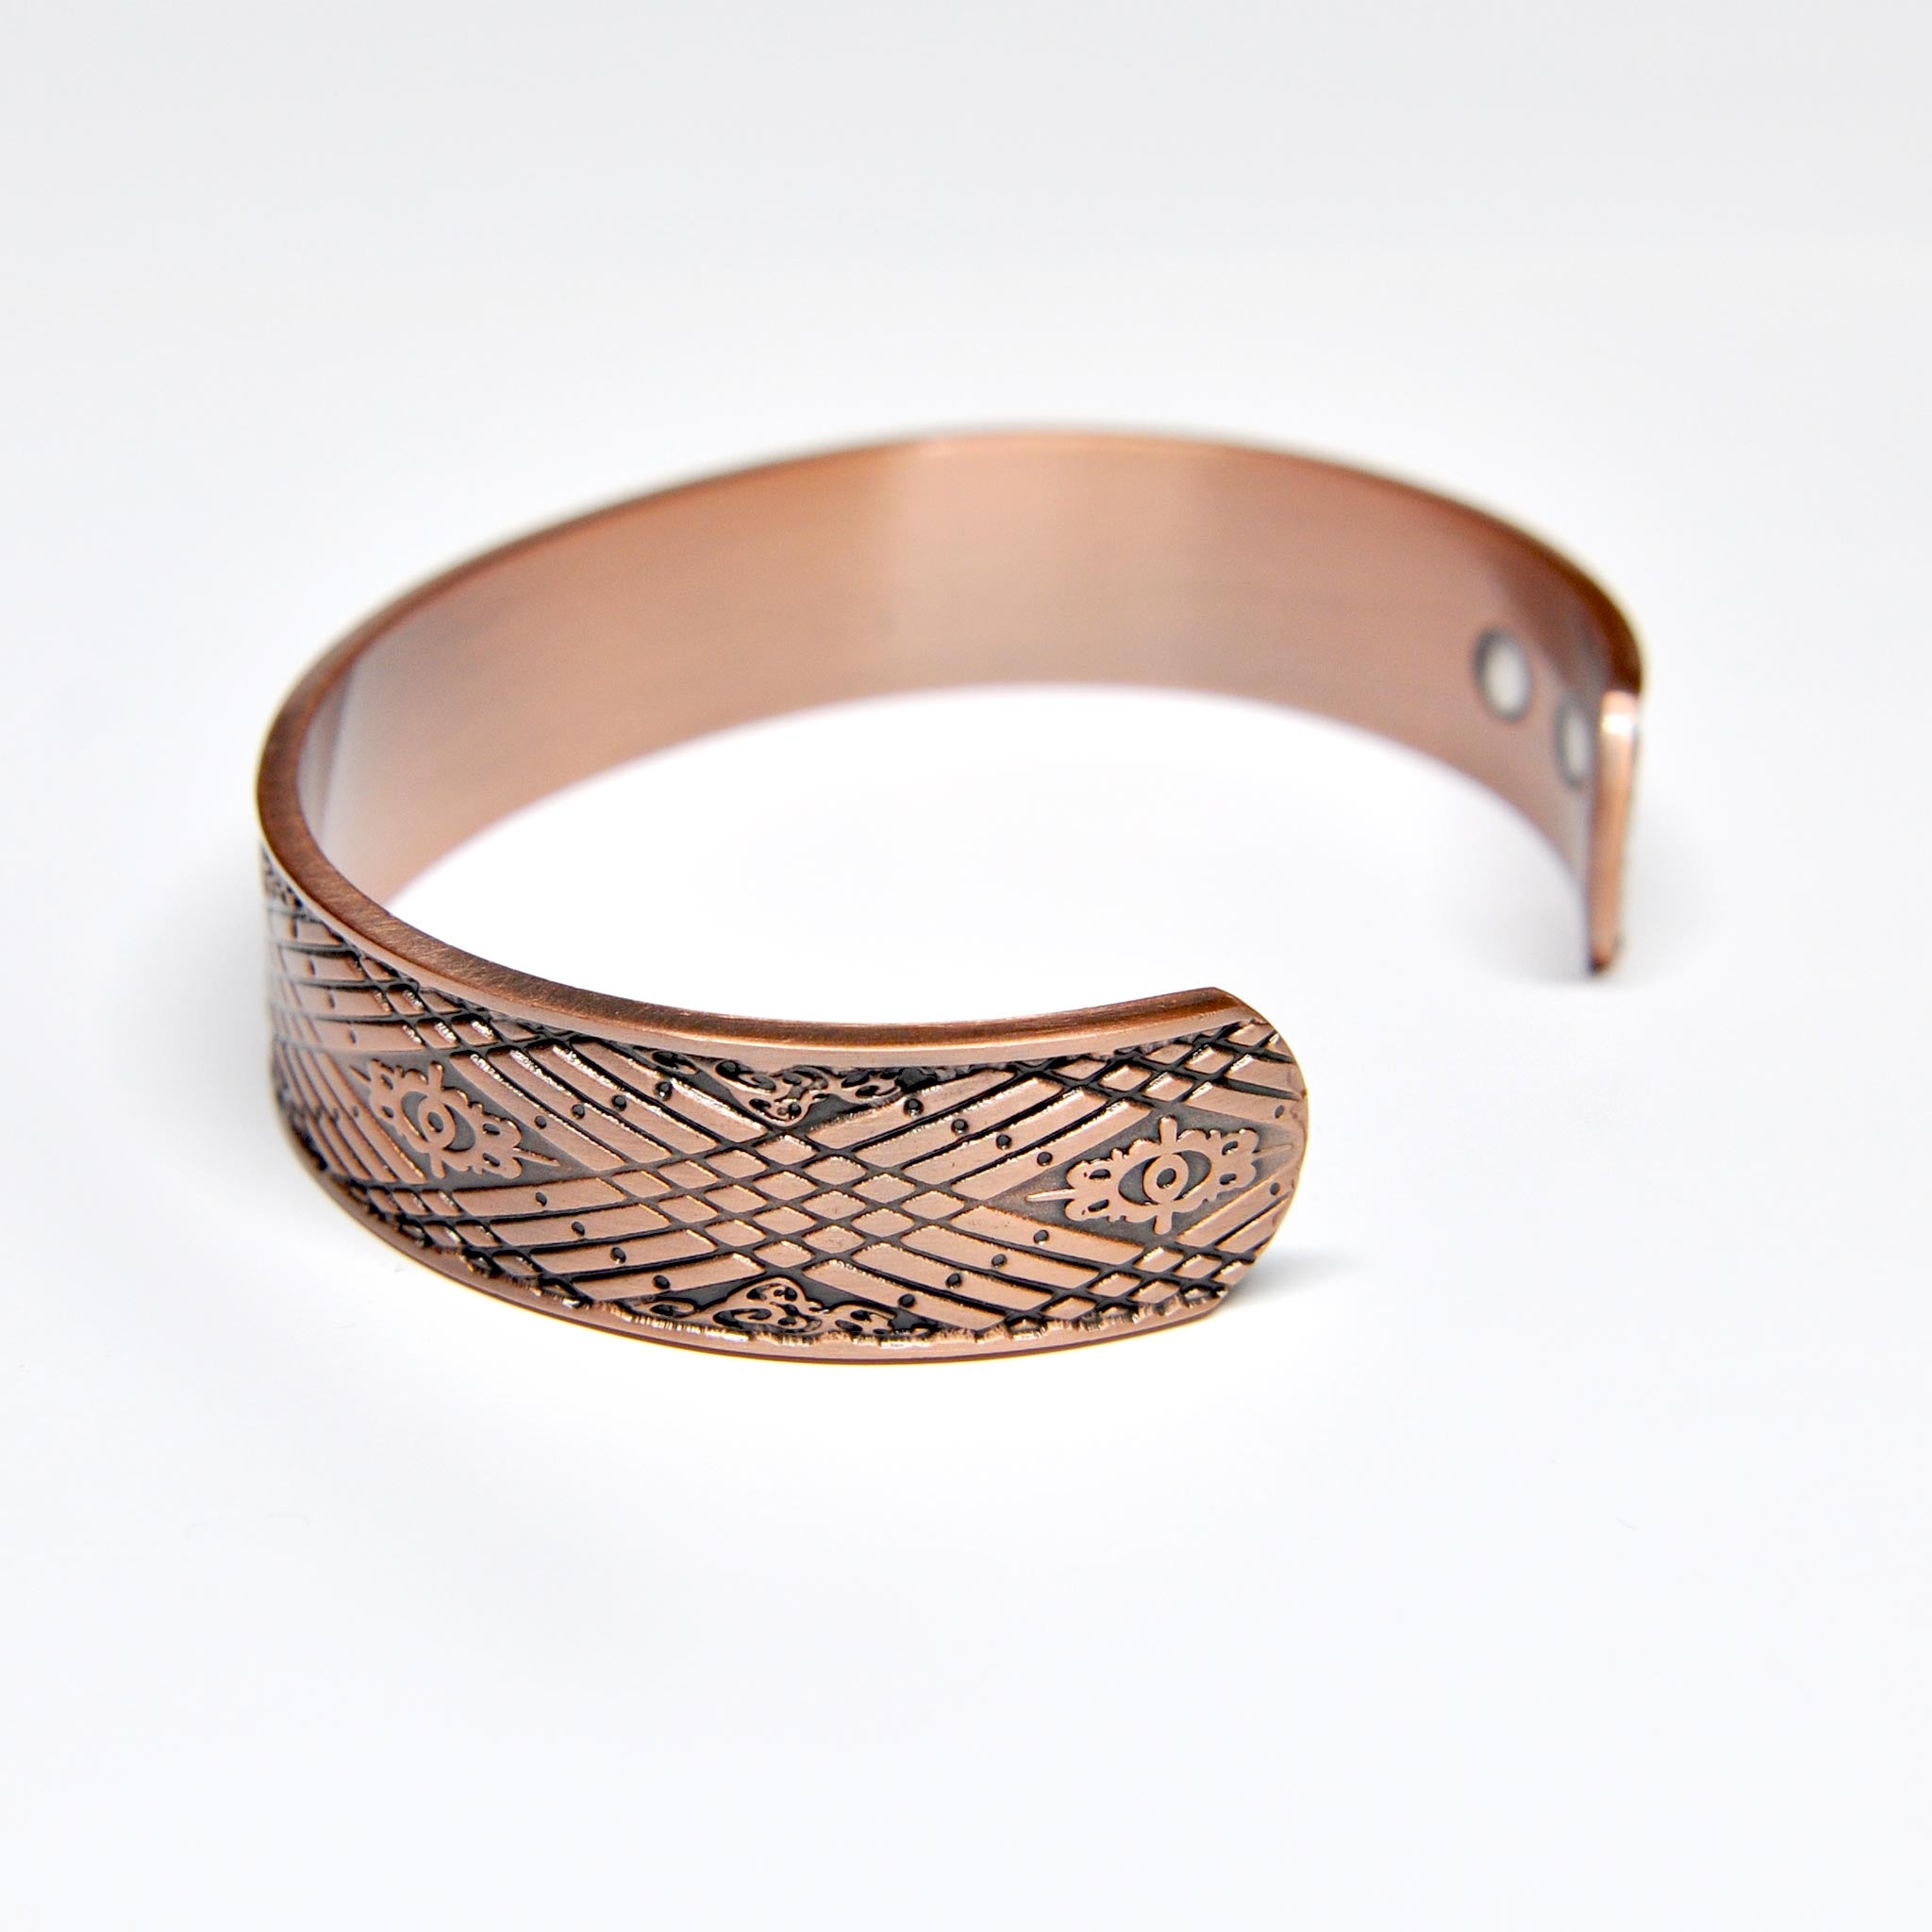 copper bracelet for men